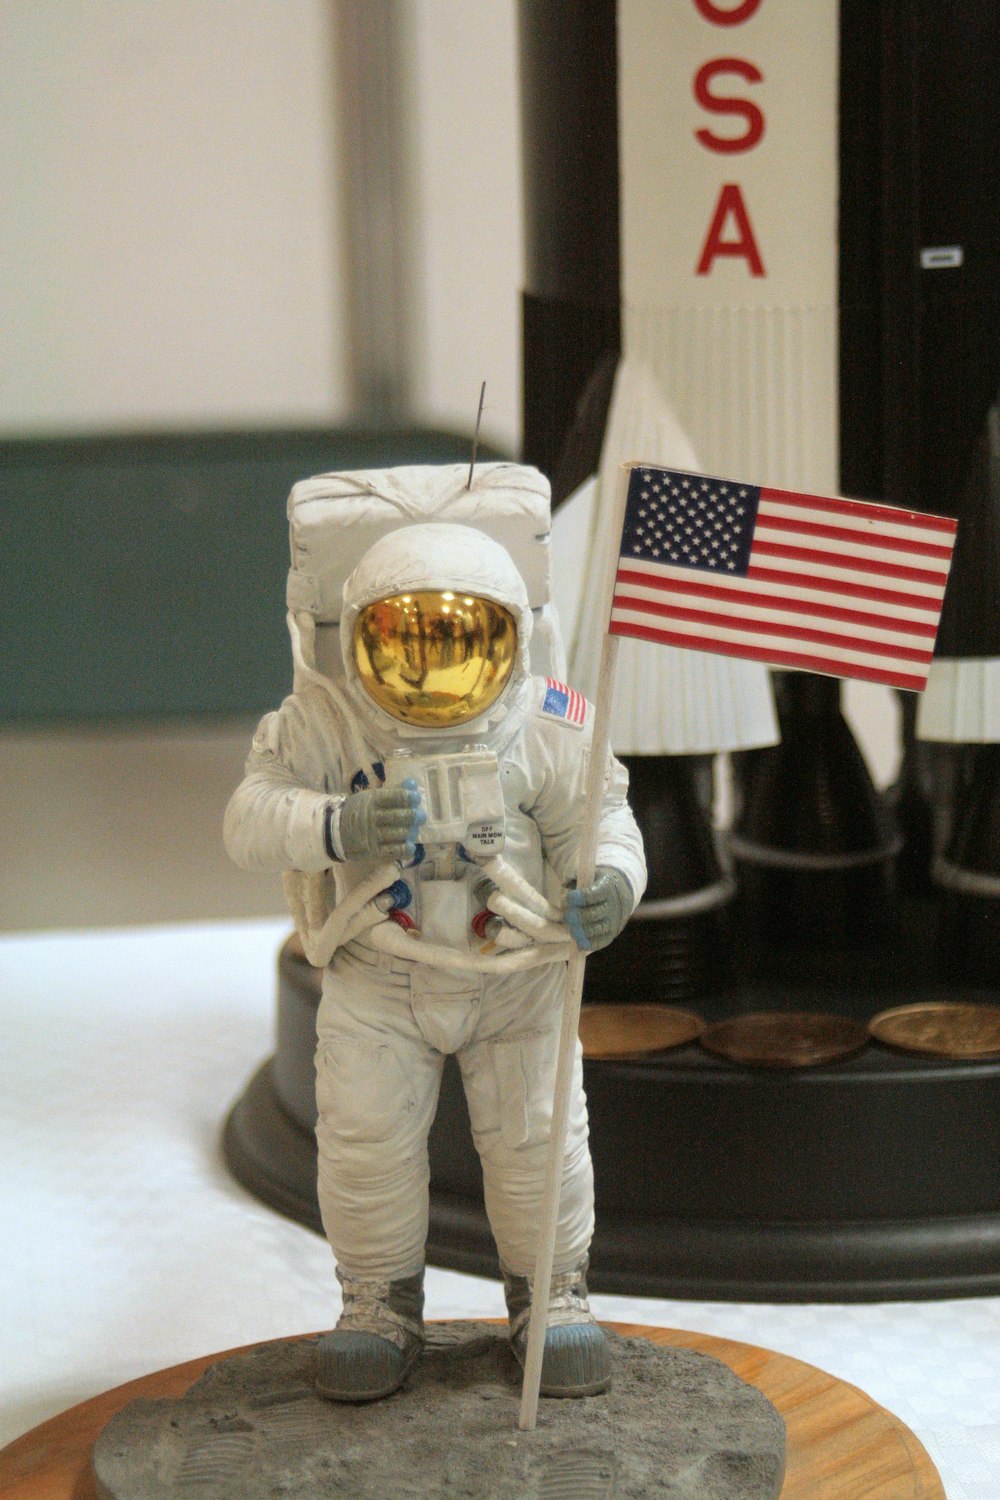 Una estatua de un astronauta sosteniendo una bandera